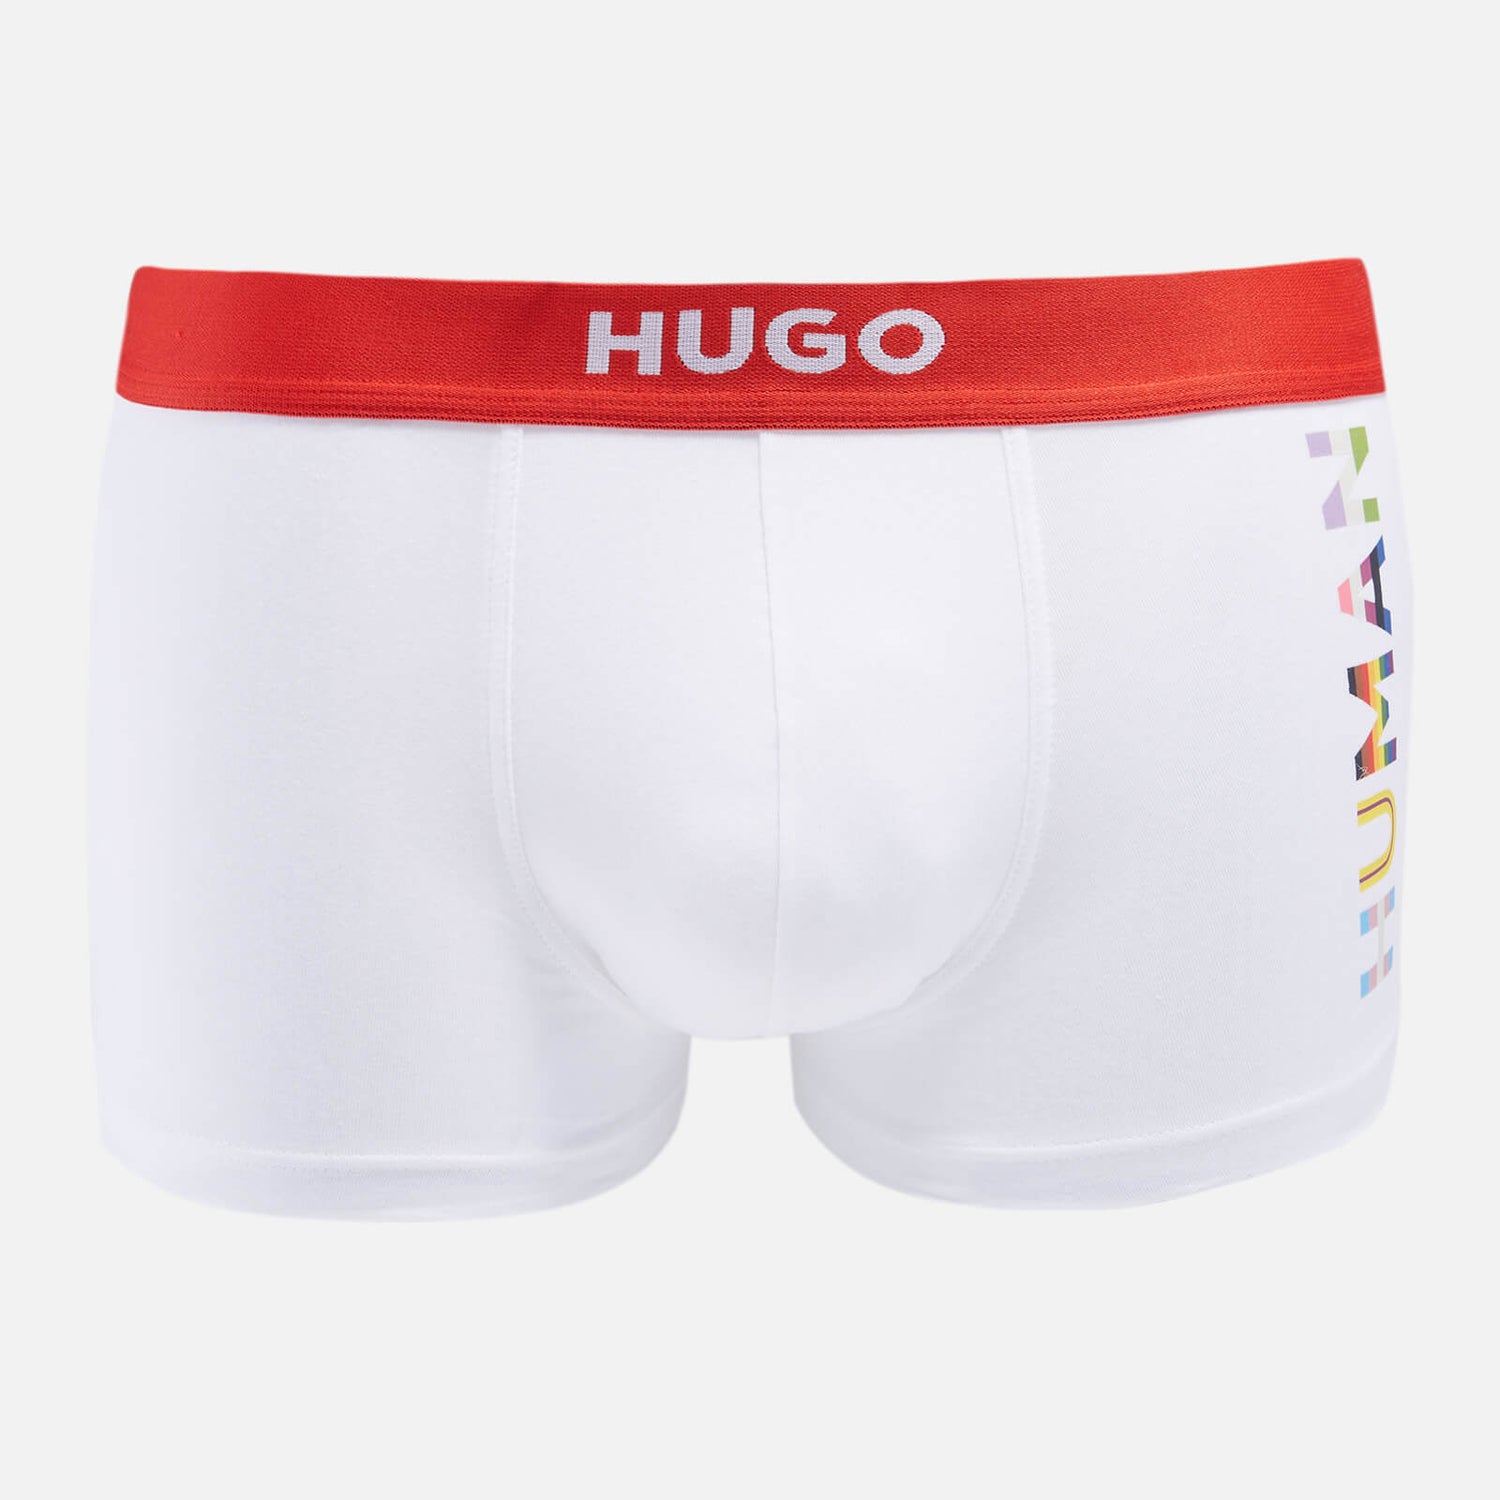 HUGO Bodywear Men's Pride Trunks - White - S